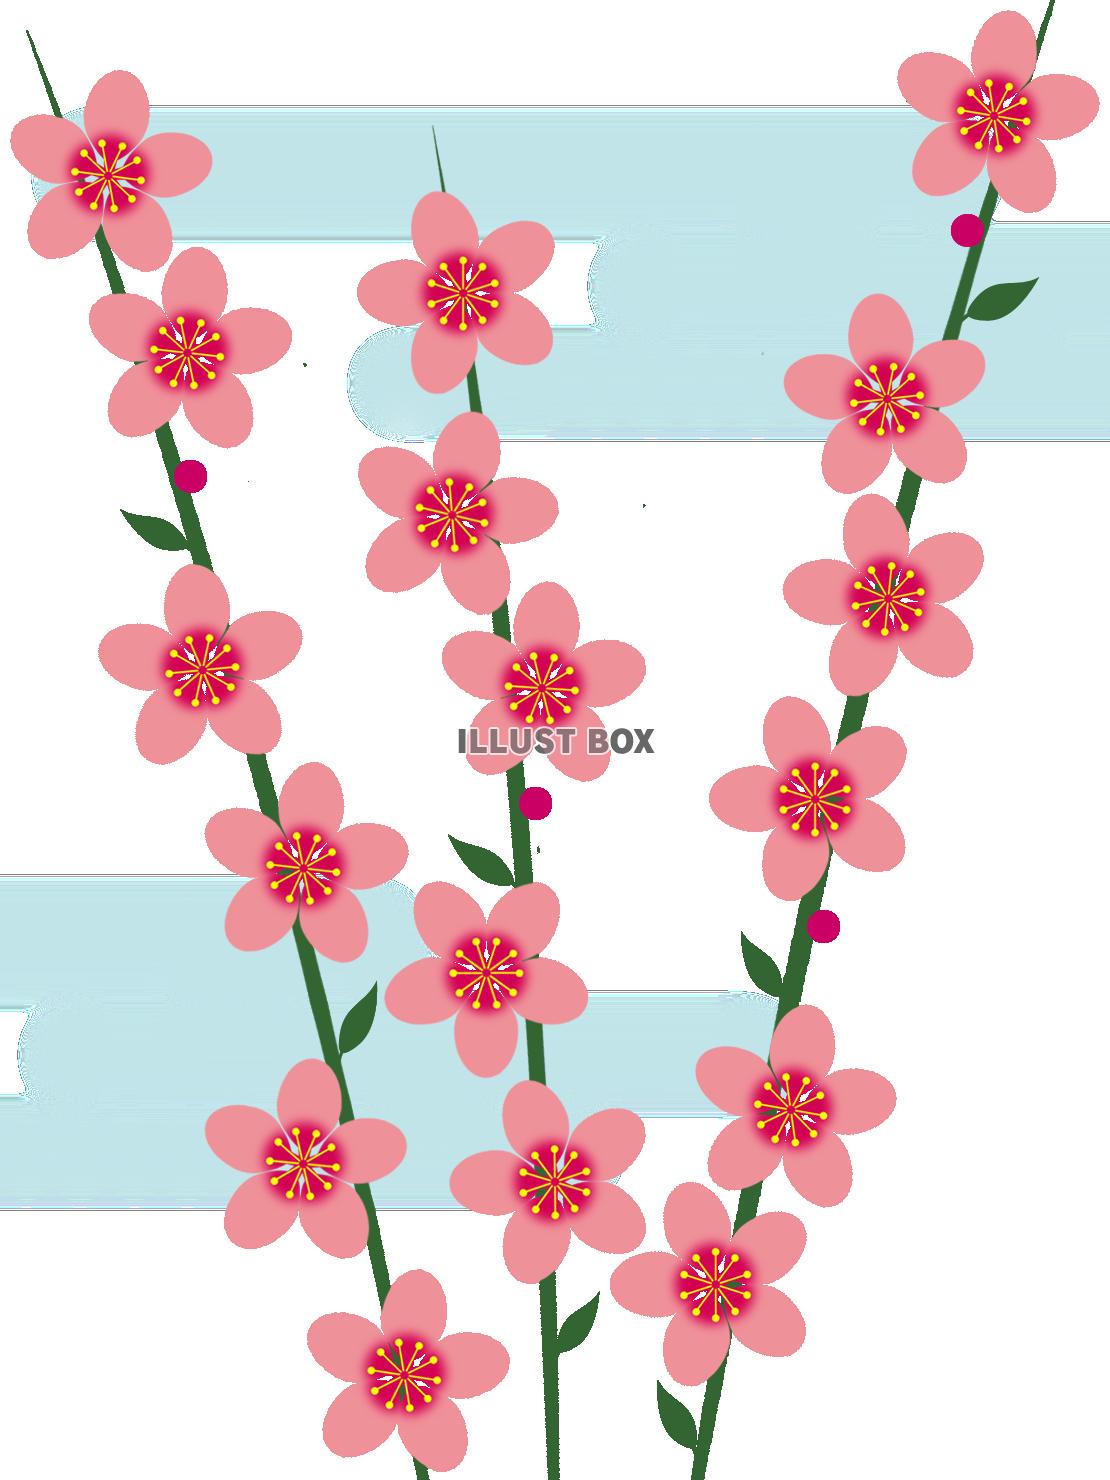 無料イラスト 桃の花模様壁紙シンプル背景素材イラスト 透過png